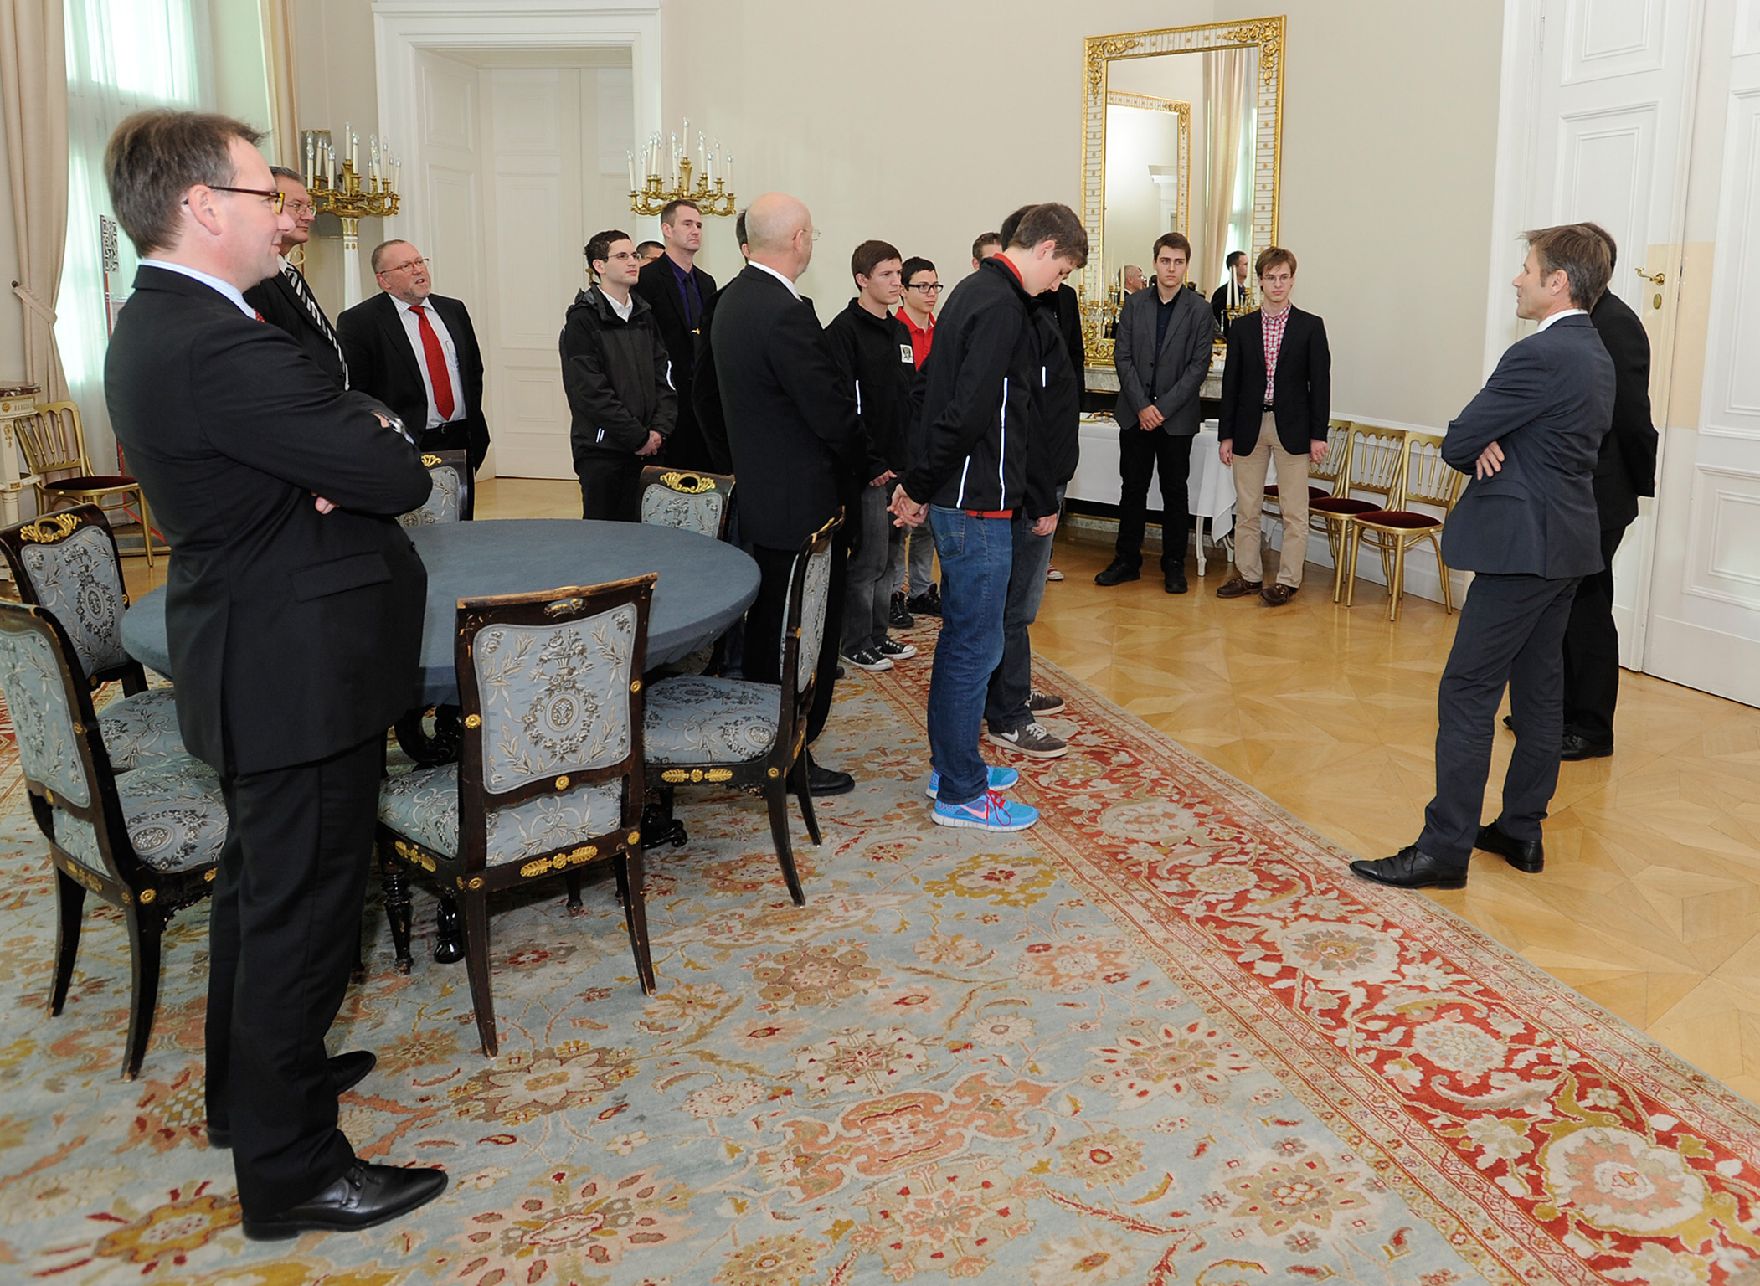 Am 8. November 2012 empfing Staatssekretär Josef Ostermayer die Gewinner der "Cyber Security Challenge 2012" im Bundeskanzleramt.